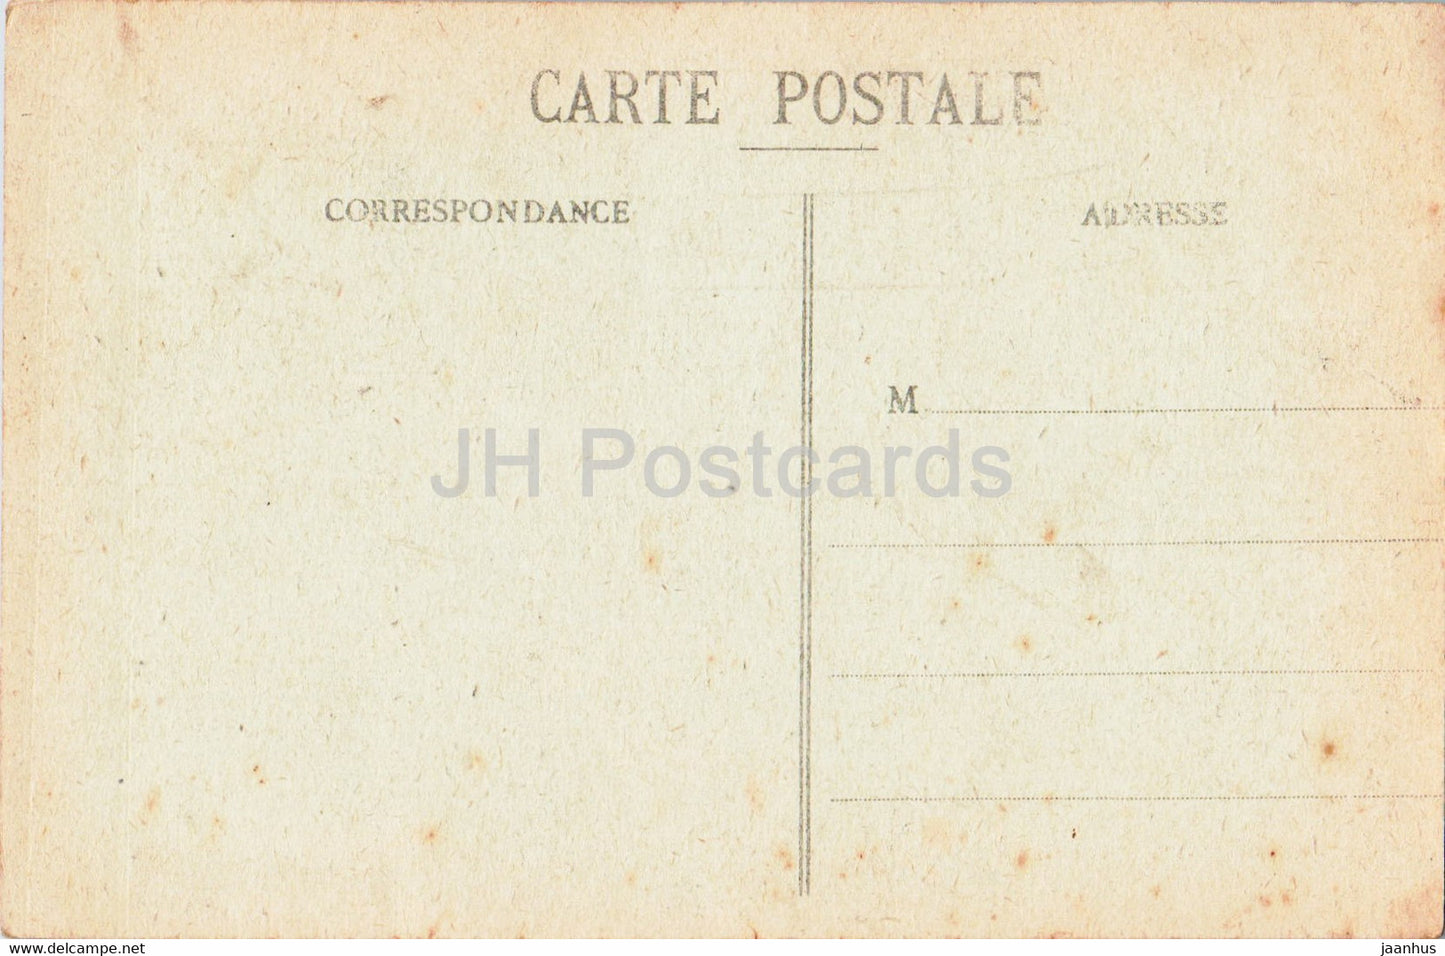 Mont St Michel - Abbaye - Adam et Eve chasses du Paradis - 84 - old postcard - France - unused